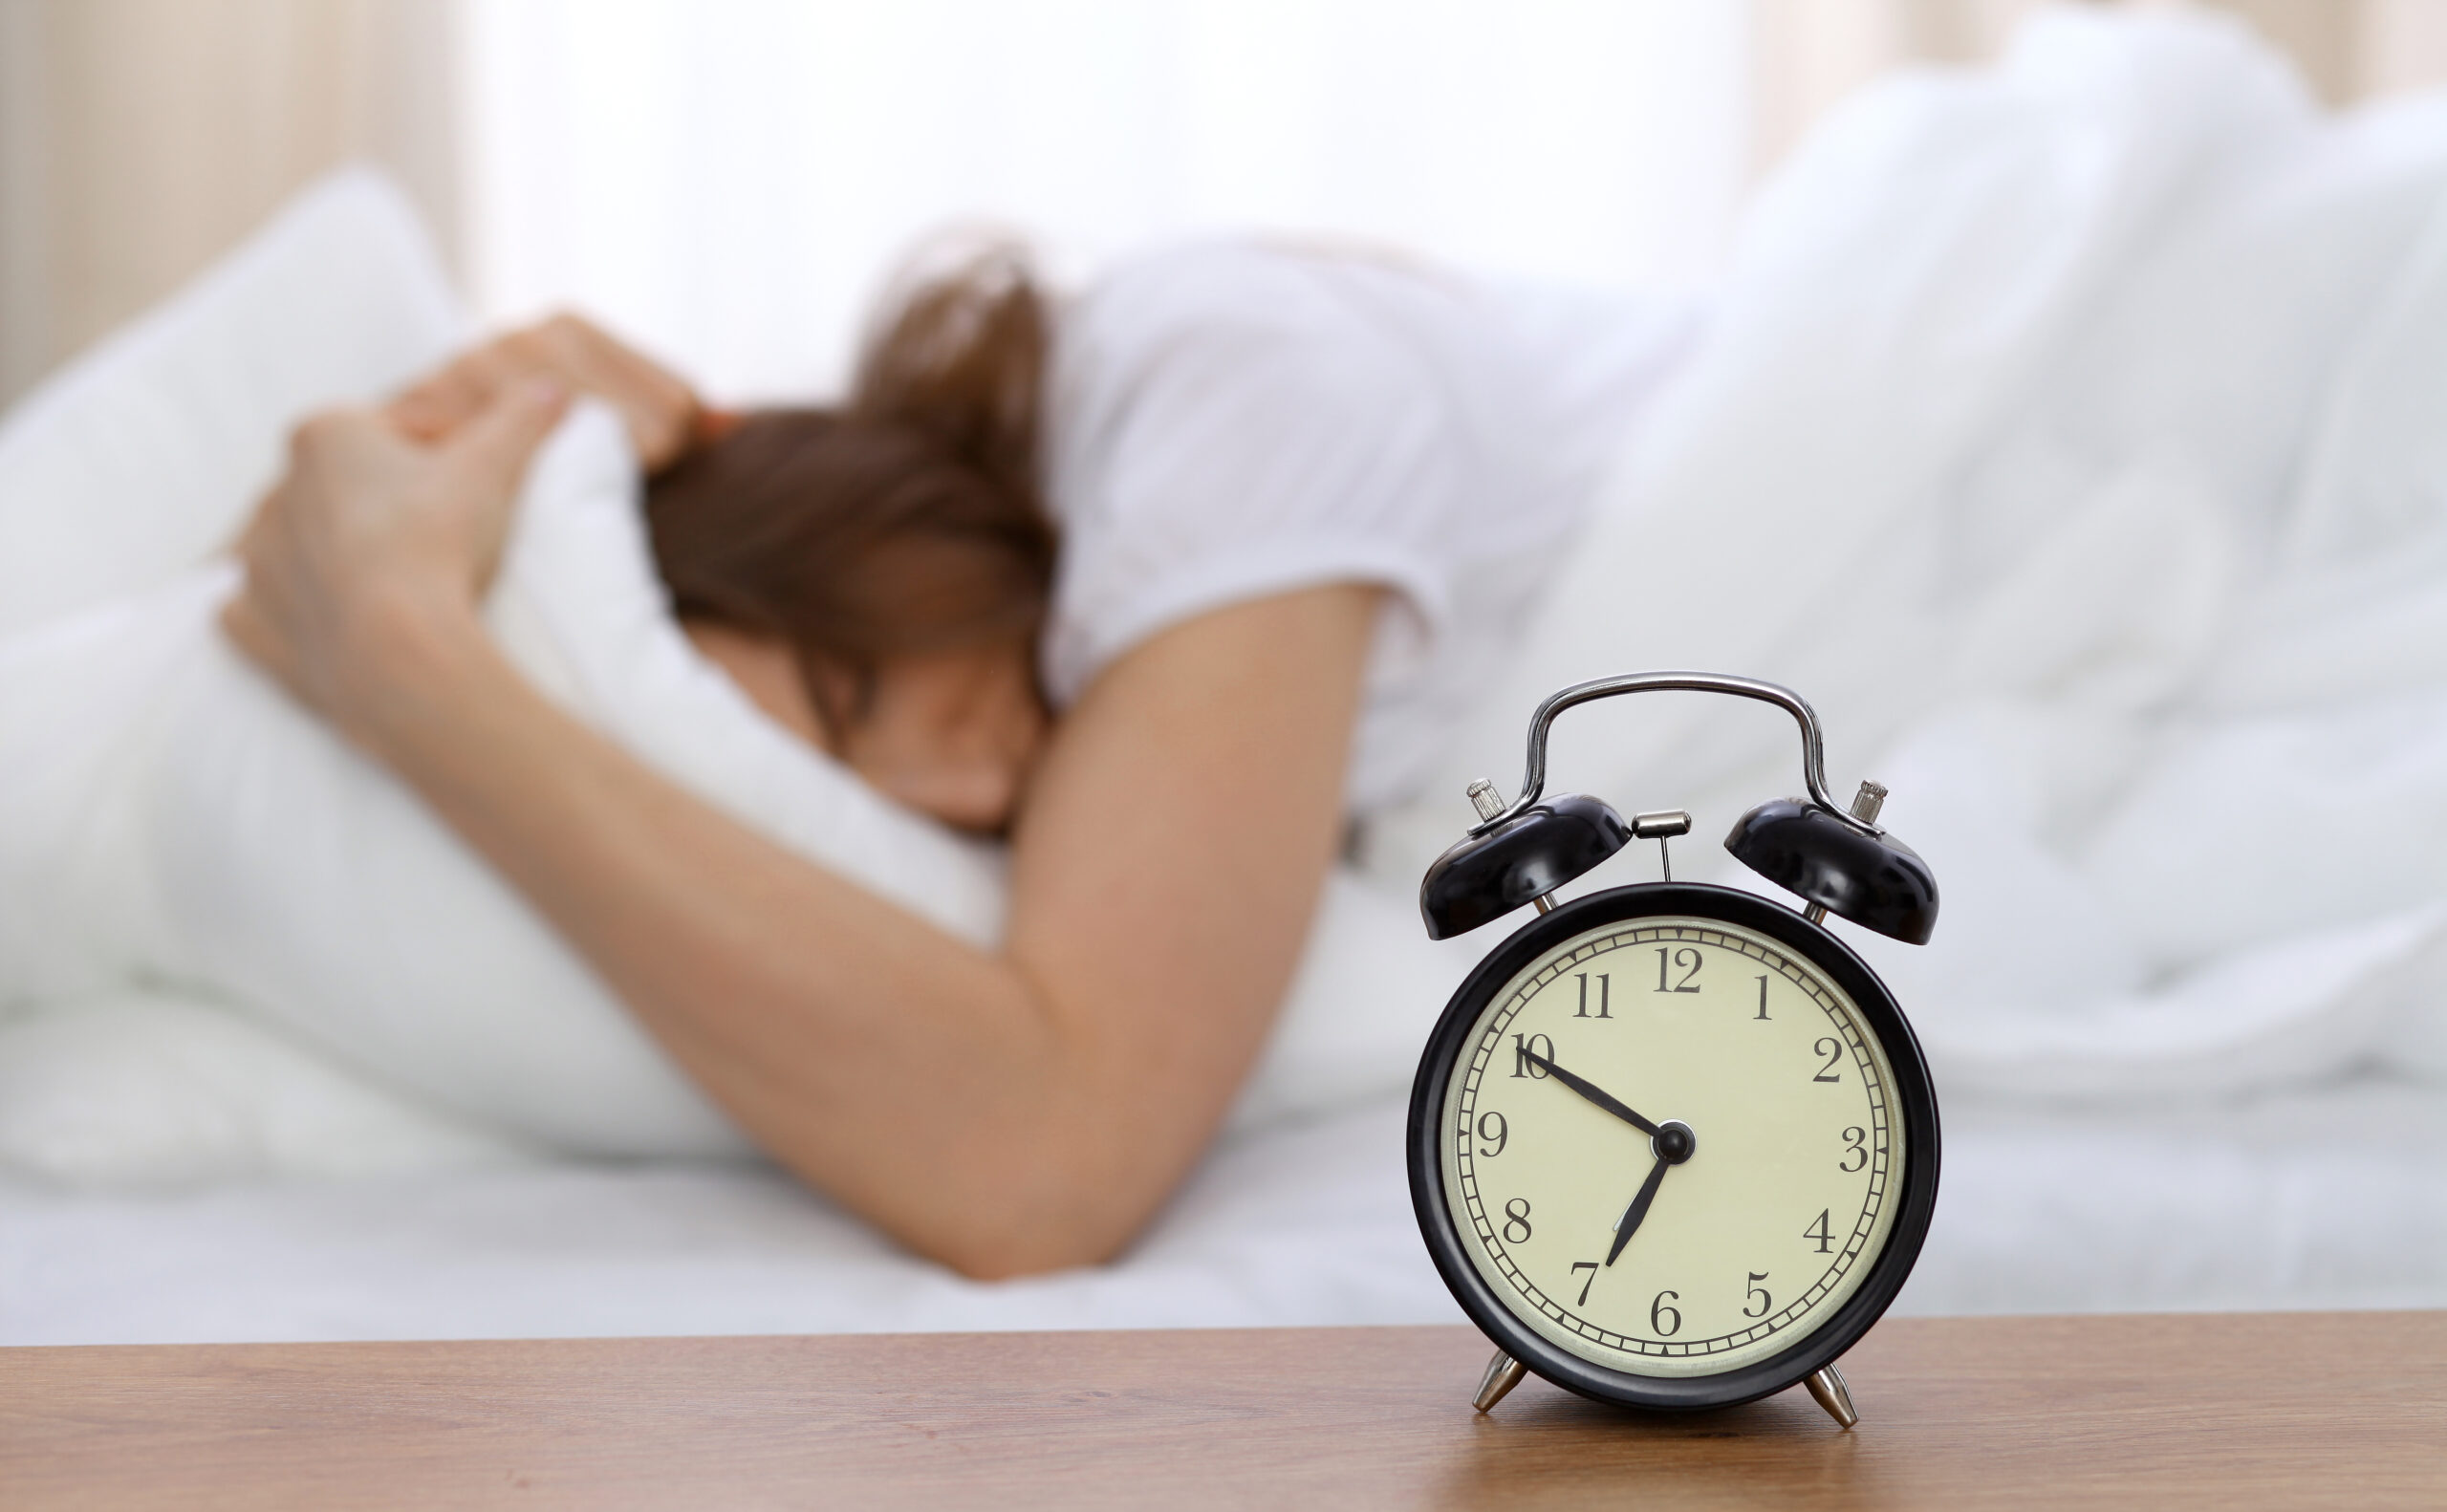 Le surpoids est une cause possible des troubles du sommeil